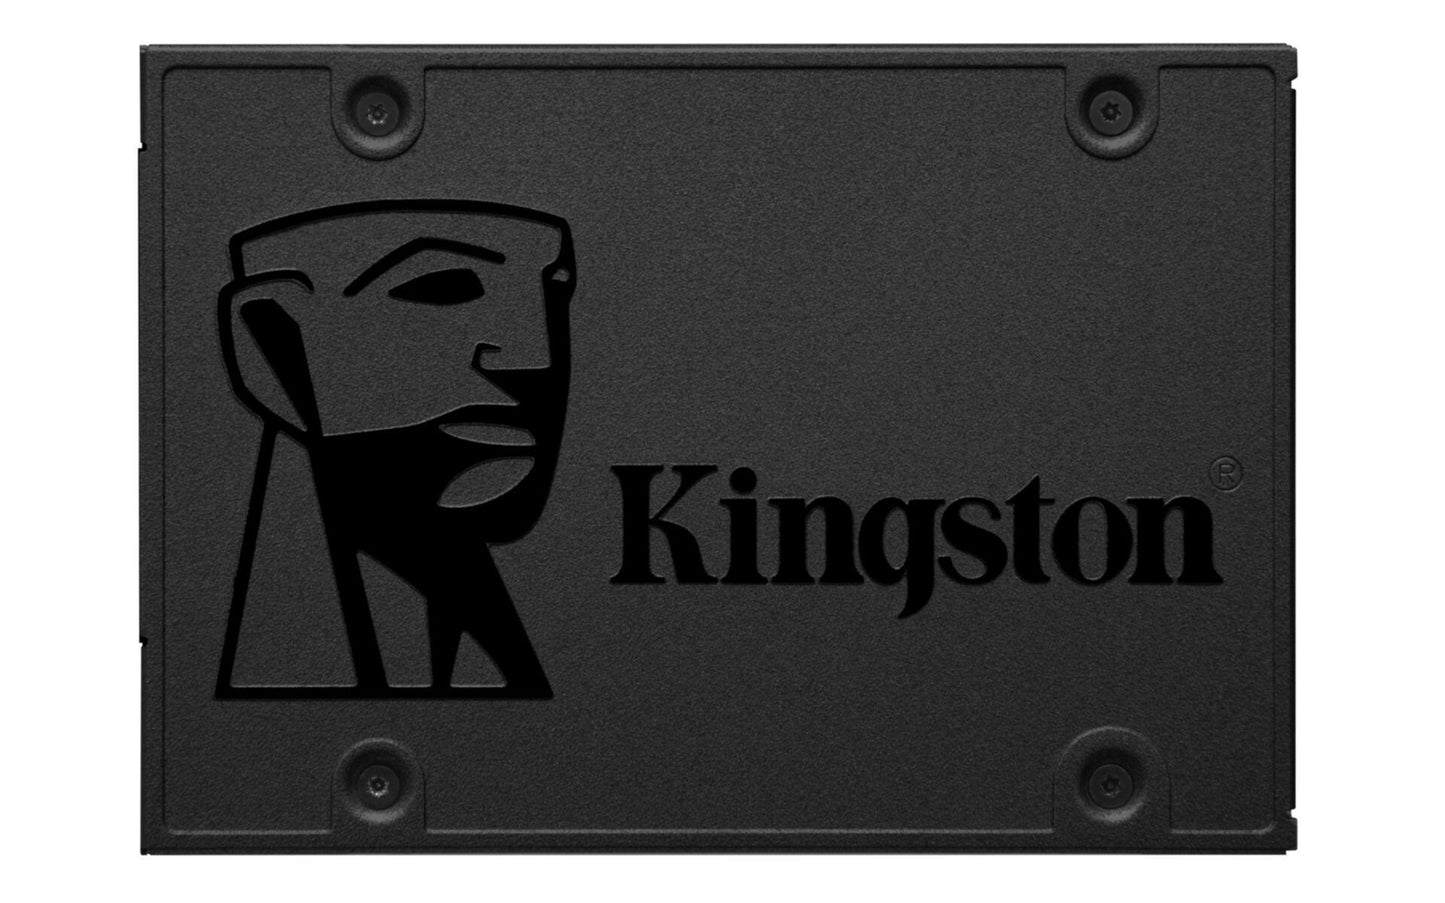 SSD Kingston A400 240GB Sata3  SA400S37/240G 2,5